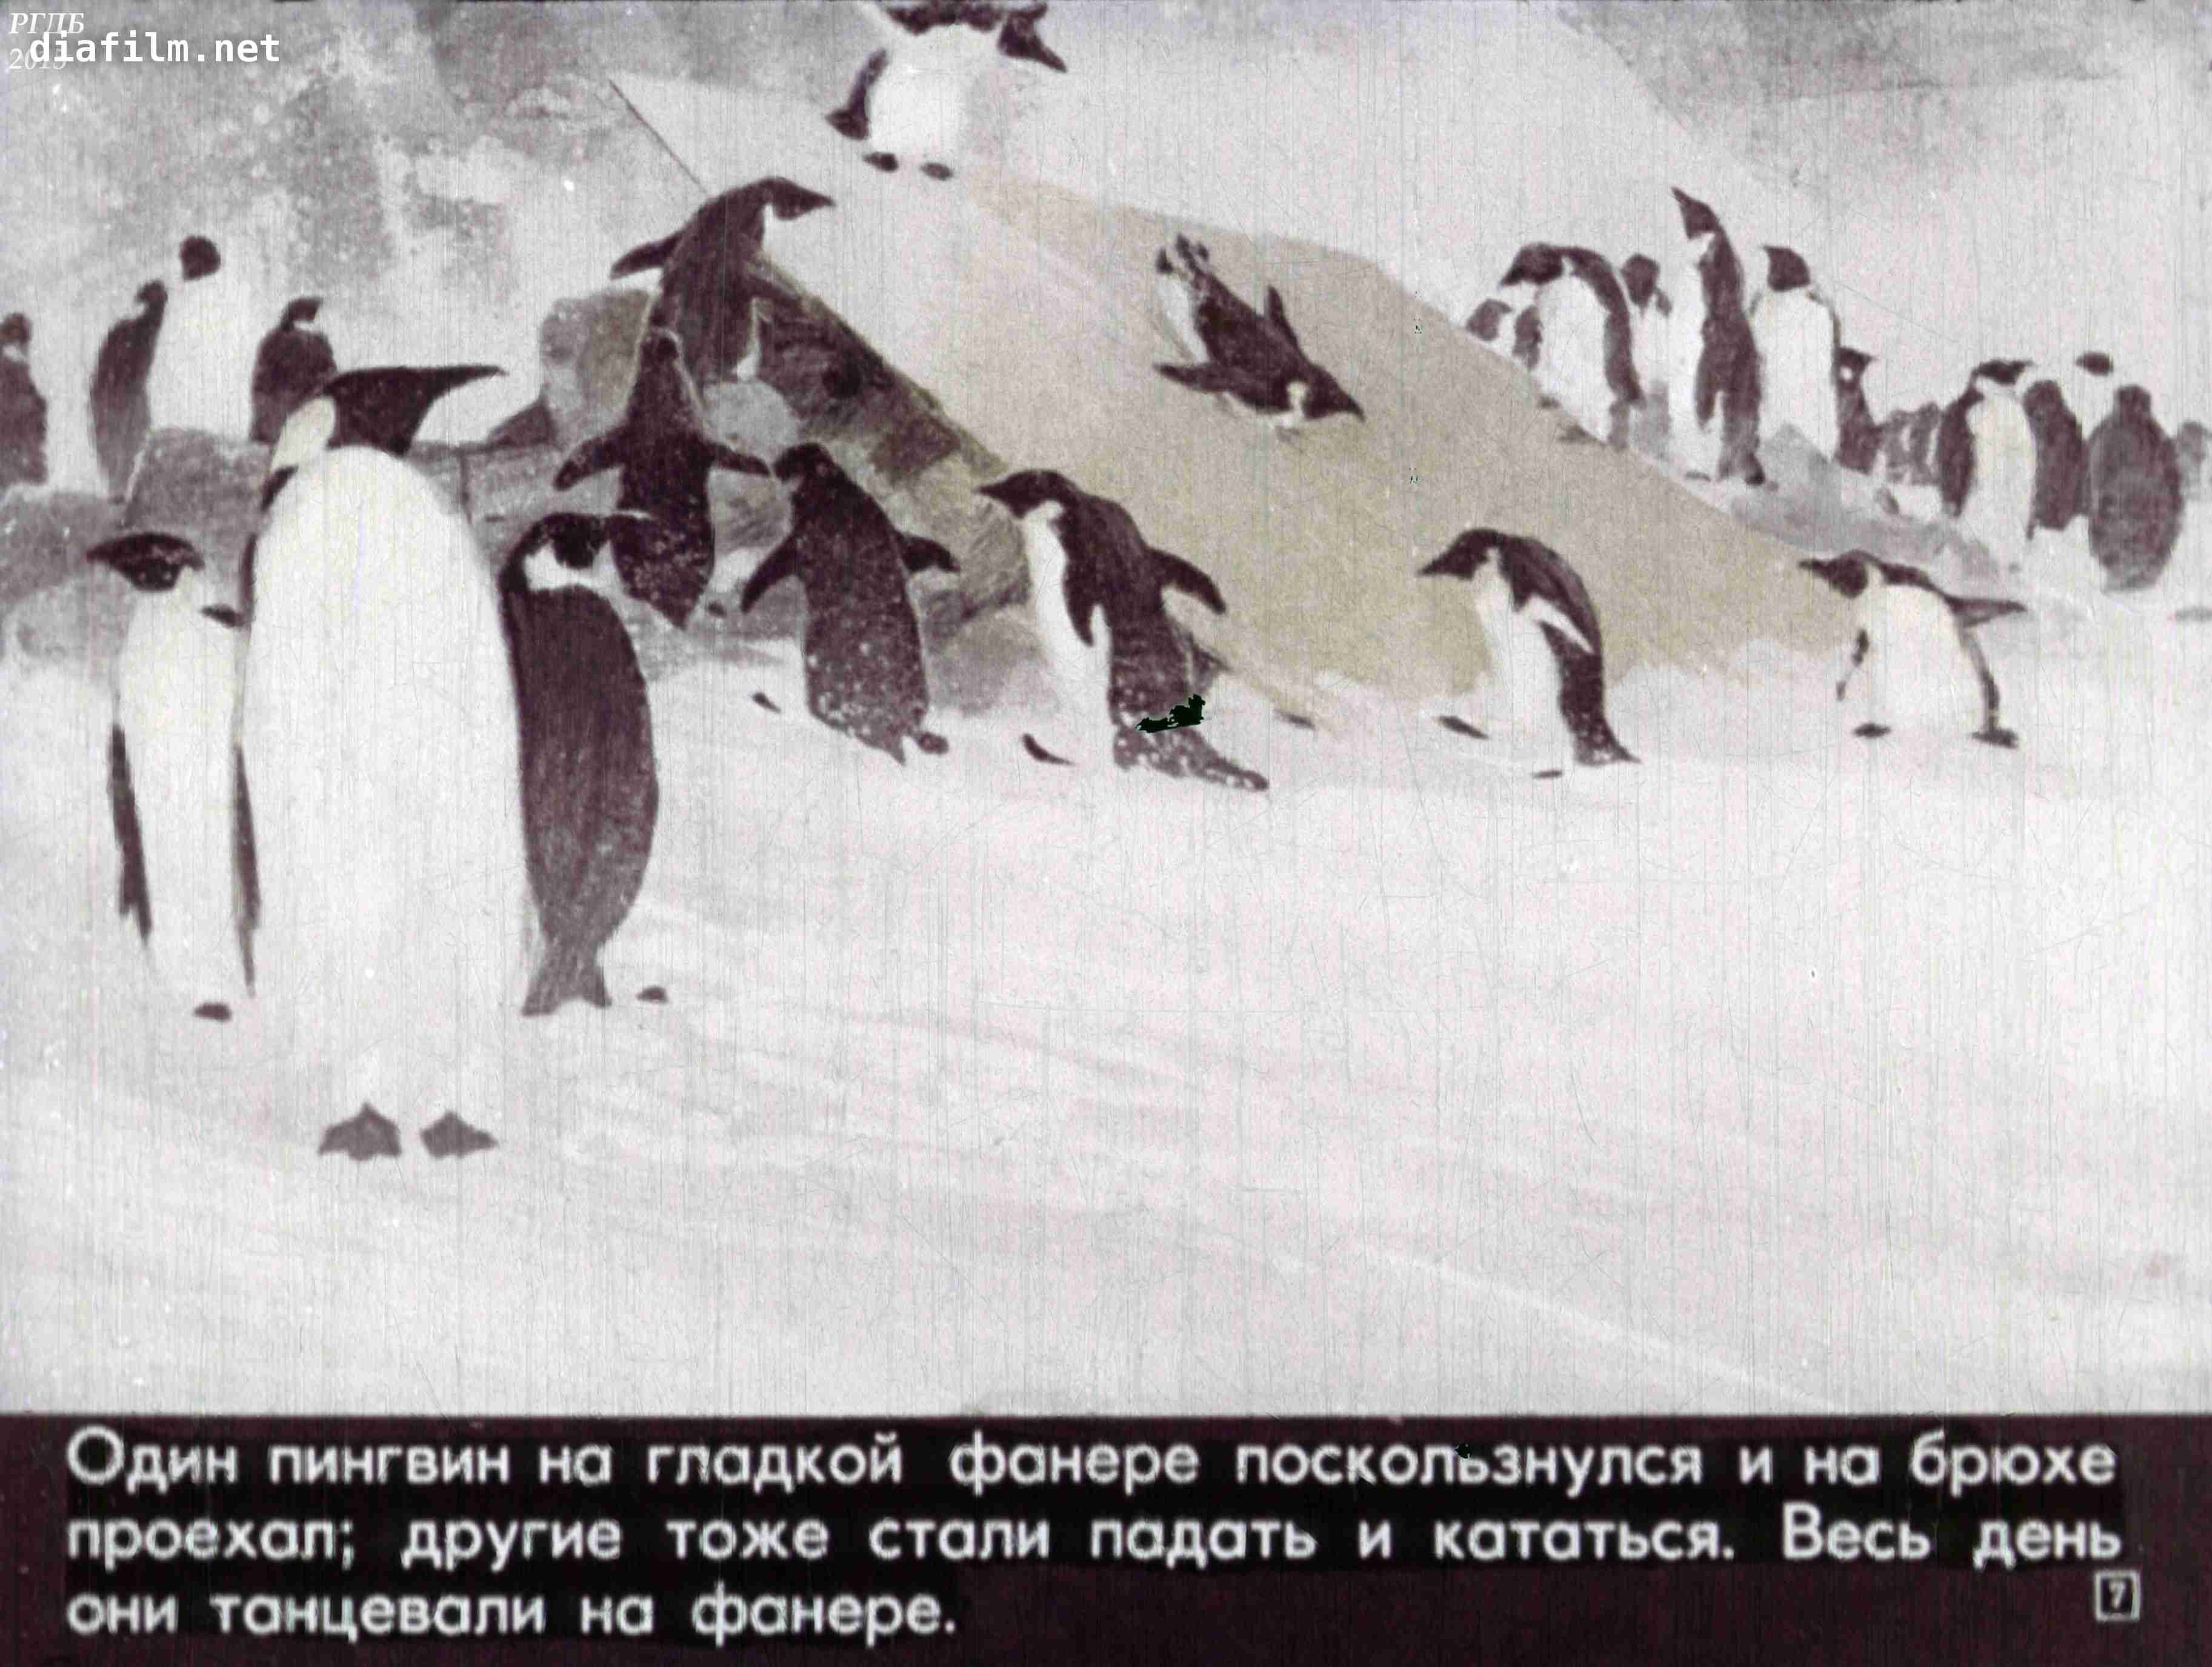 Занятие про пингвинов. Рассказ про пингвинов Снегирев. Г Снегирев Пингвиний пляж. Г Снегирева про пингвинов рассказ. Иллюстрации рассказа про пингвинов Снегирёв.